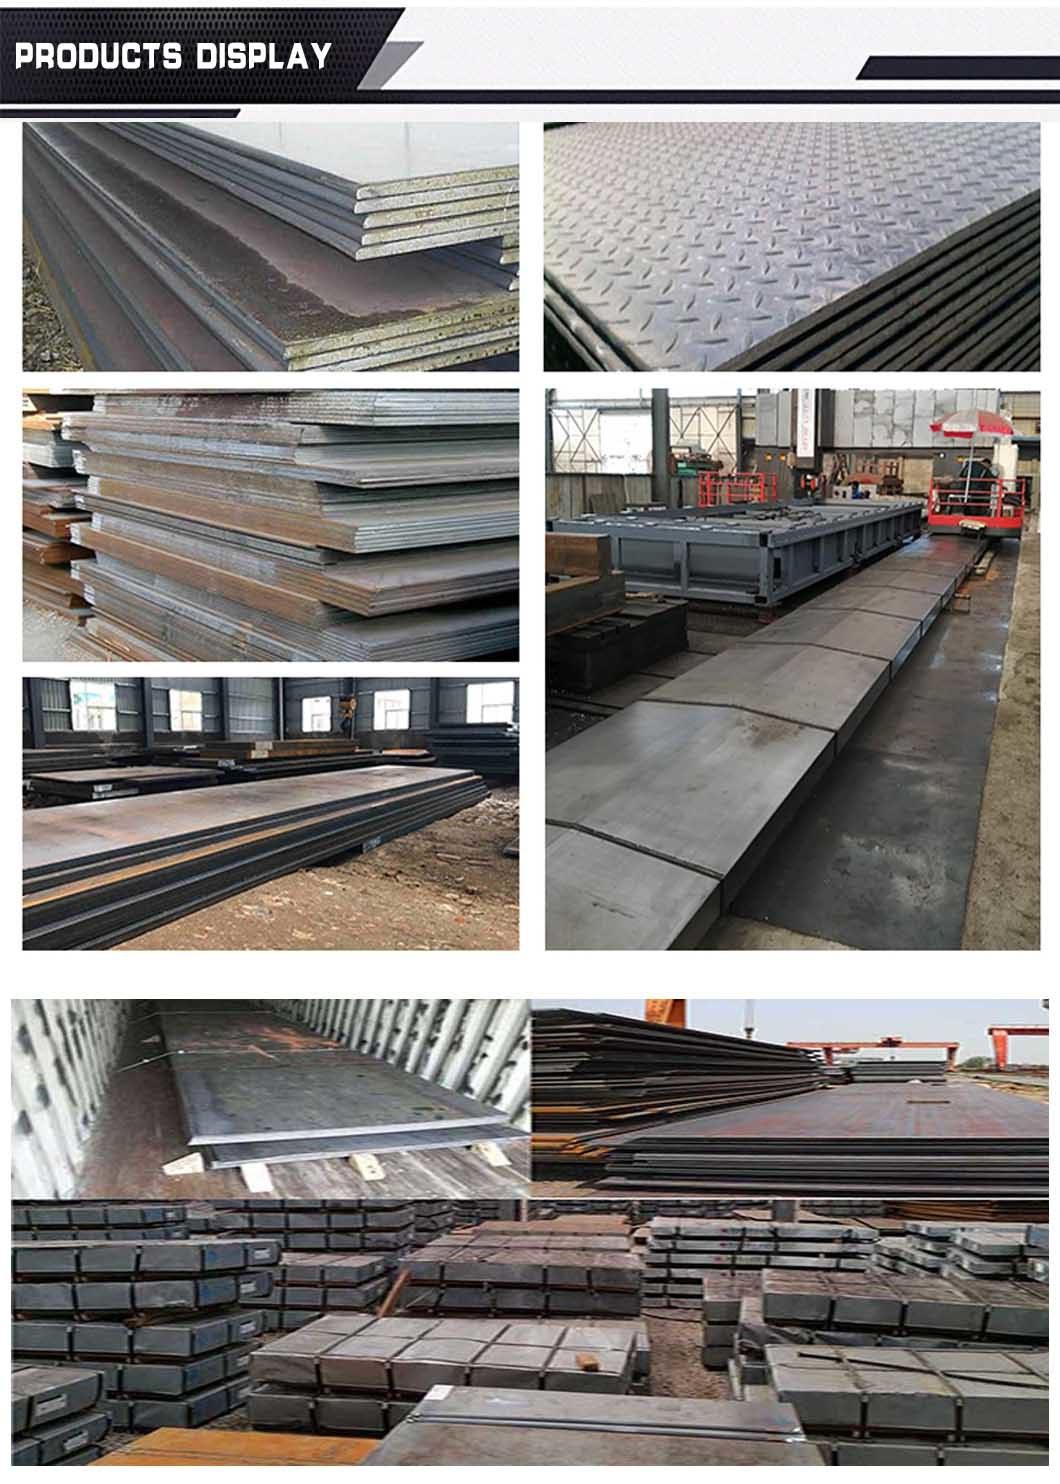 ASTM A529 Gr. 42, 50 En10025-2 S275jr Structural Iron Metal Sheet High Strength Carbon Steel Plate